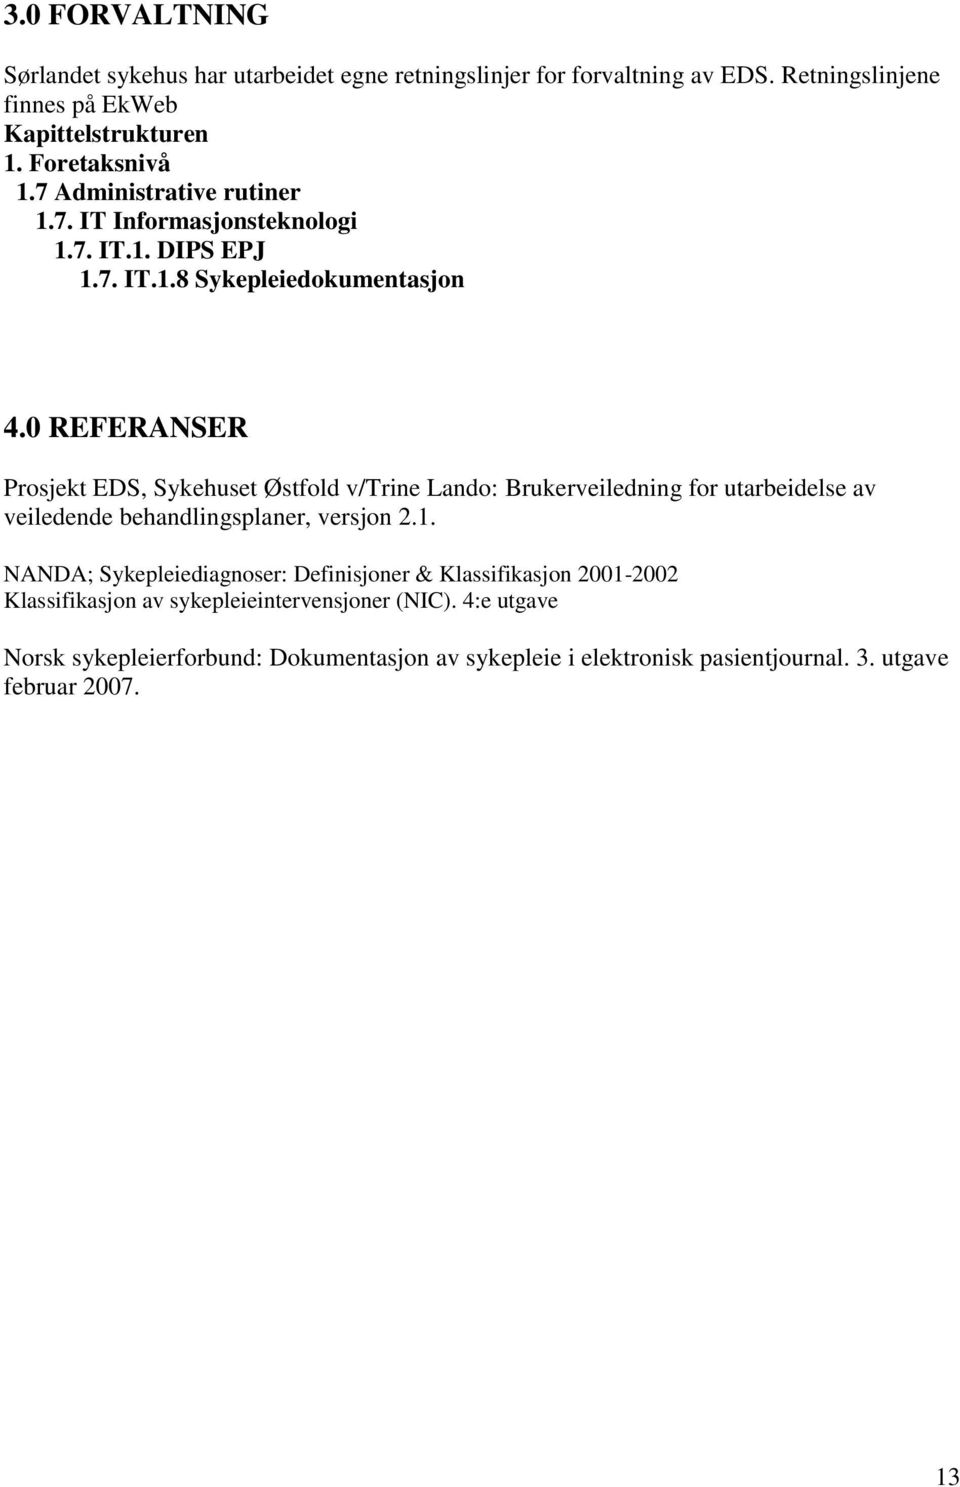 0 REFERANSER Prosjekt EDS, Sykehuset Østfold v/trine Lando: Brukerveiledning for utarbeidelse av veiledende behandlingsplaner, versjon 2.1.